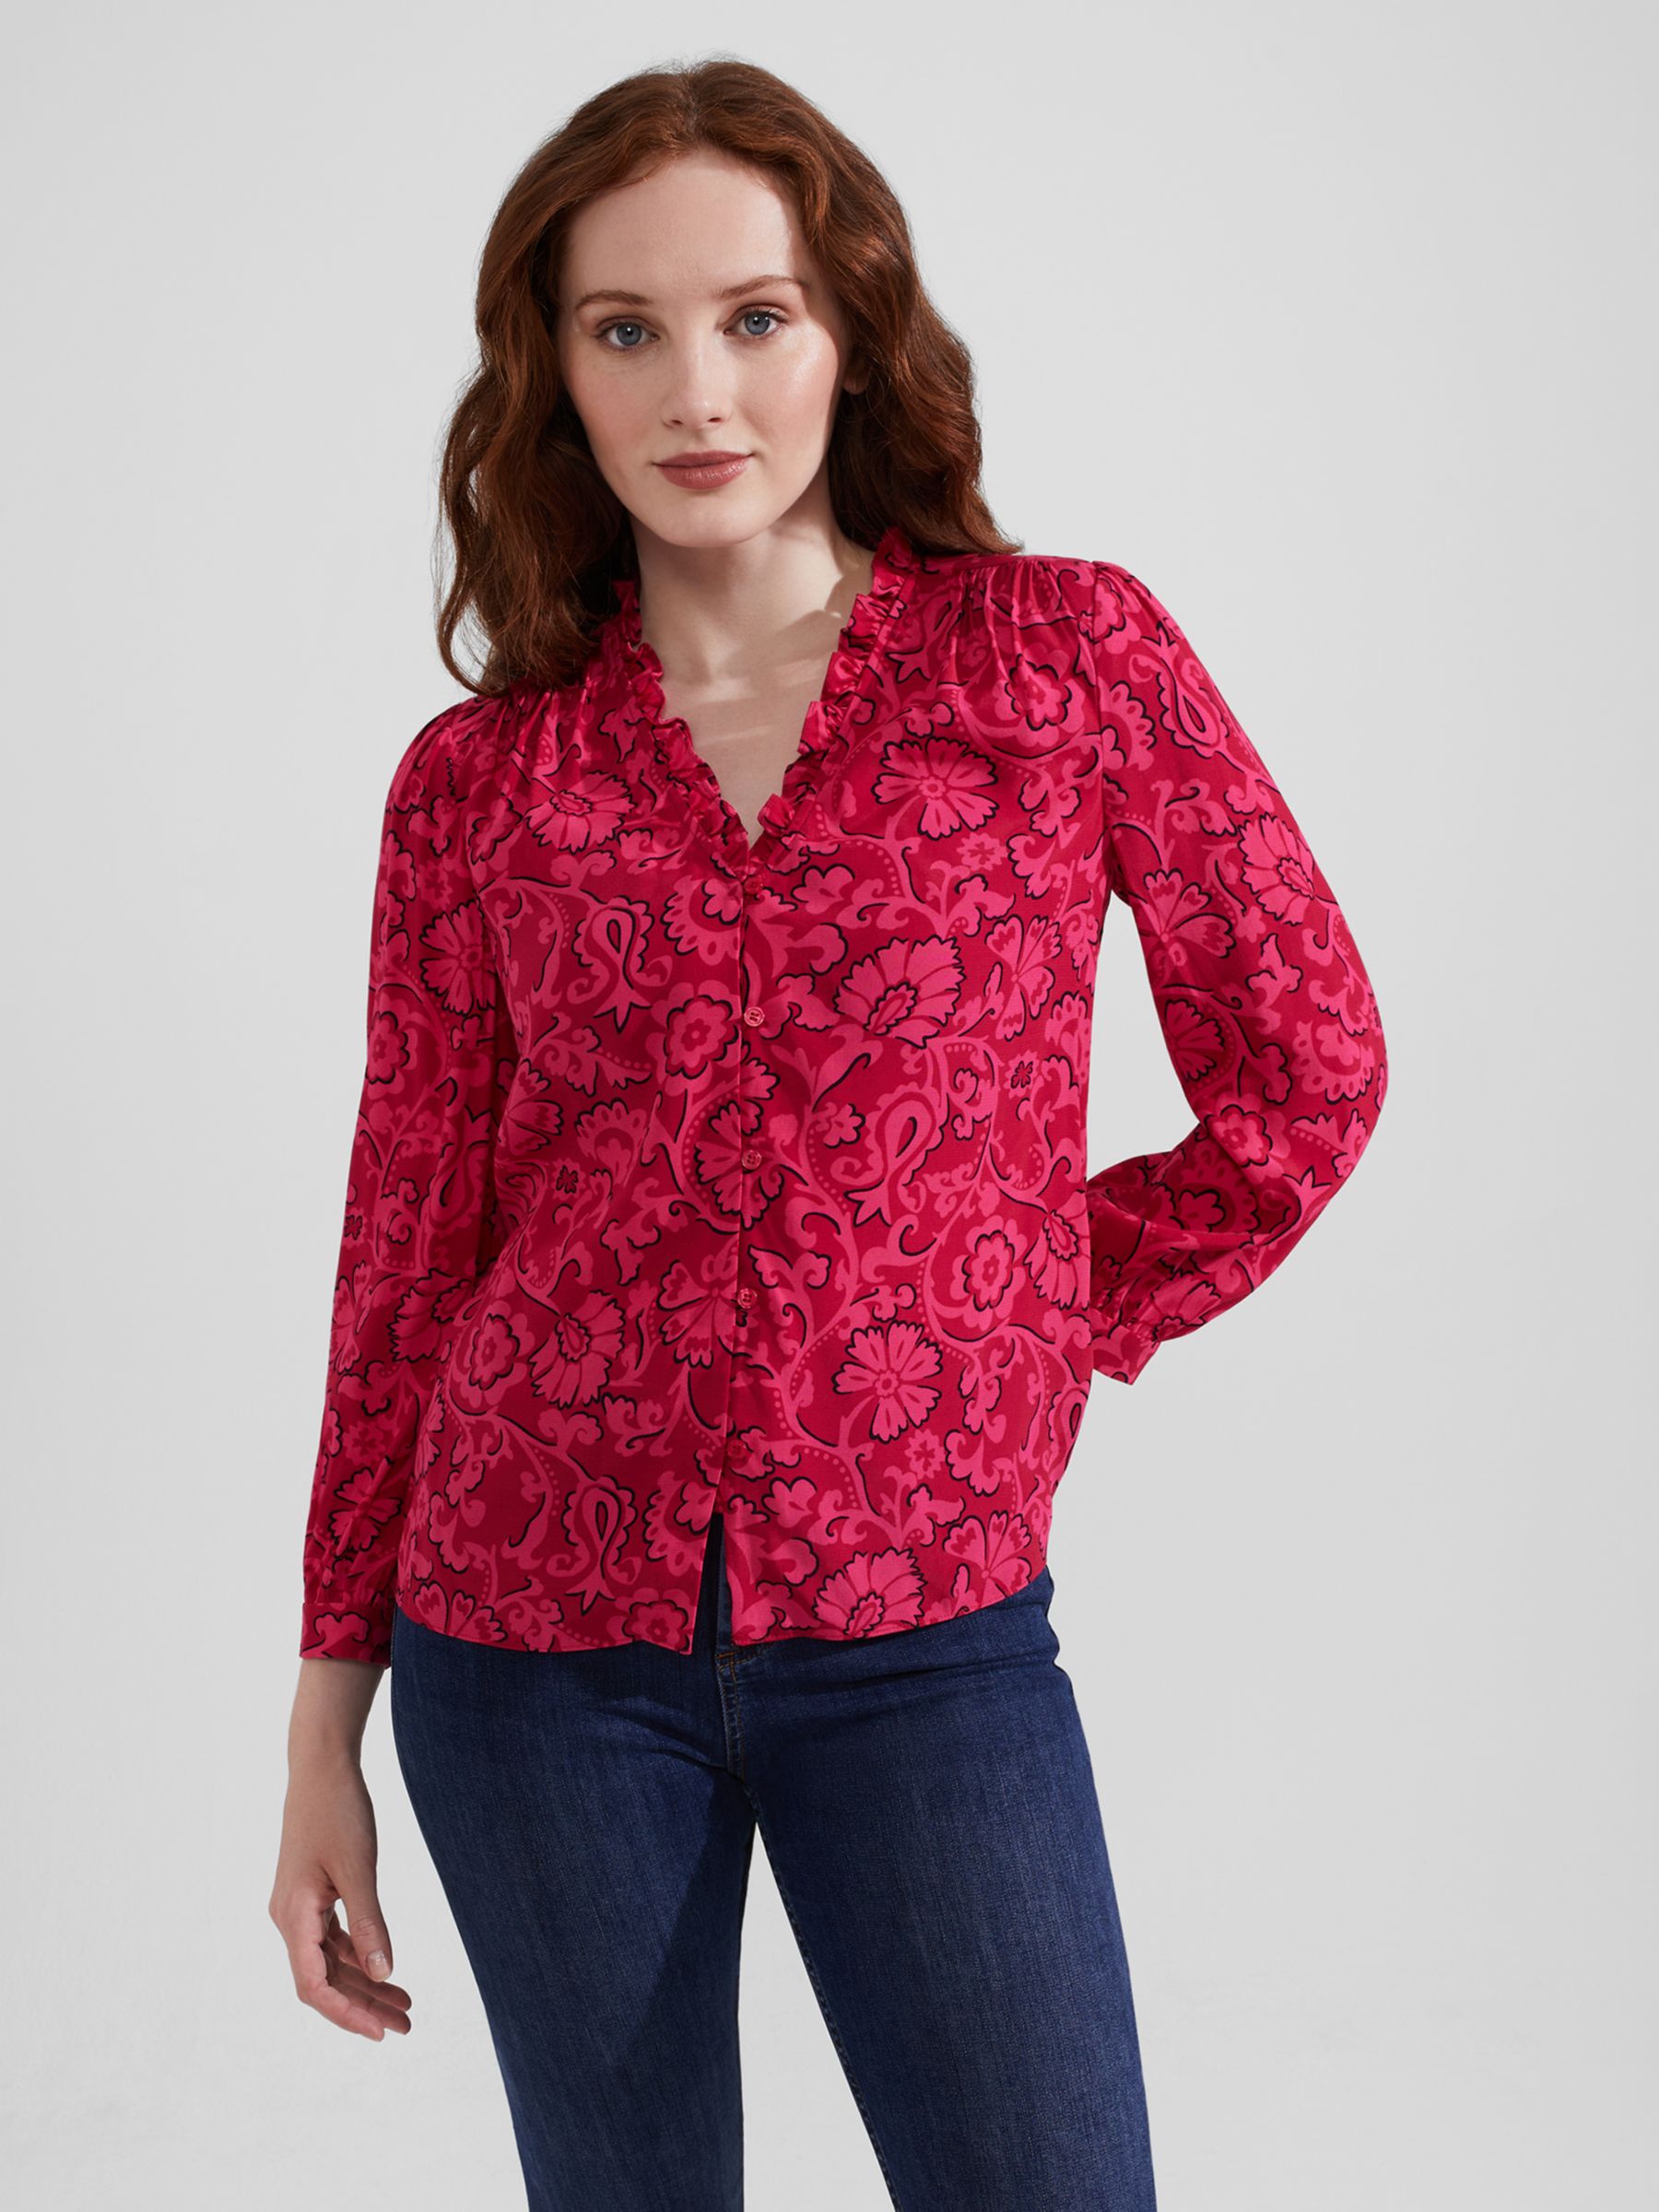 Рубашка с цветочной оборкой Gloria Hobbs, красный/розовый женская кружевная рубашка с v образным вырезом и оборками